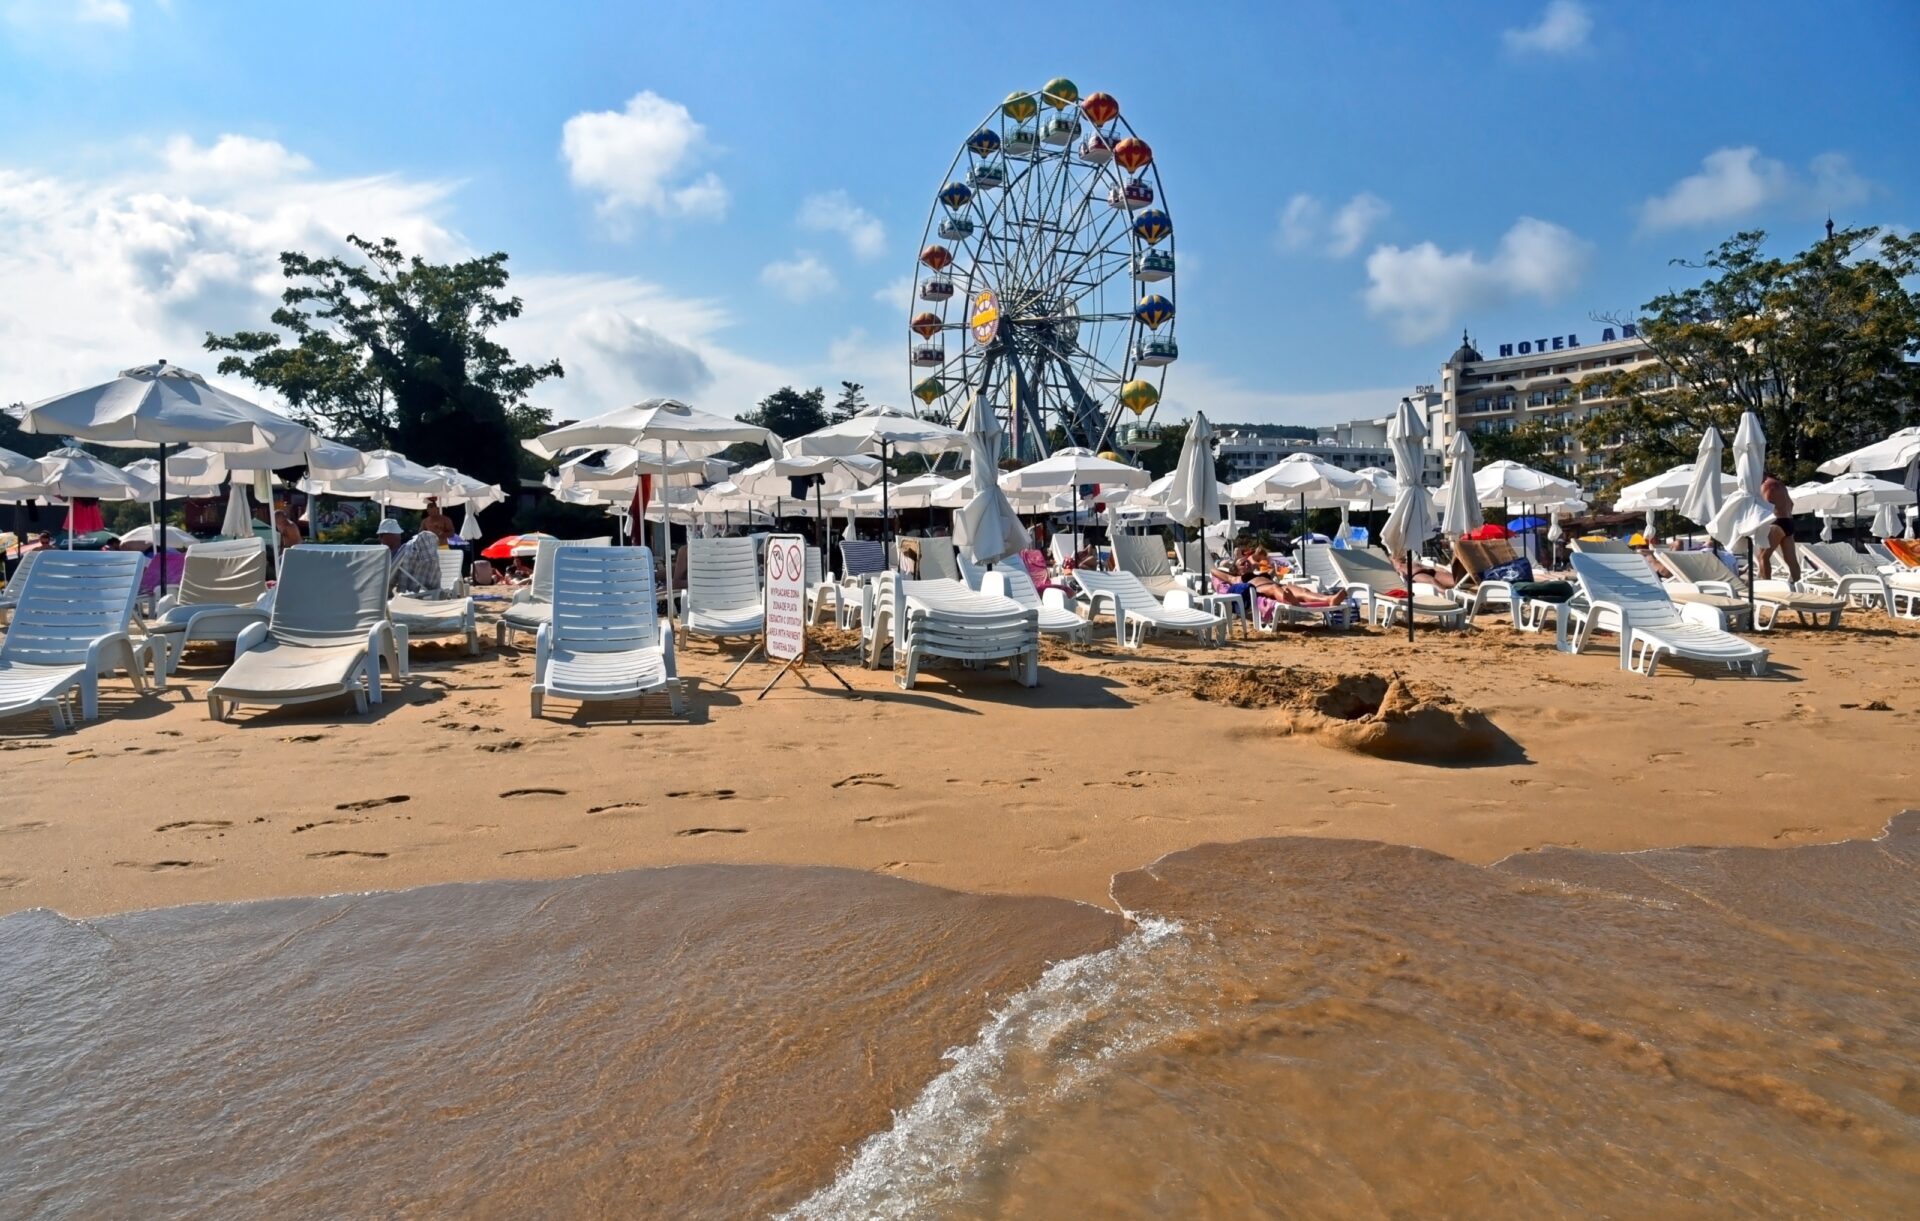 Курорт в болгарии золотые пески